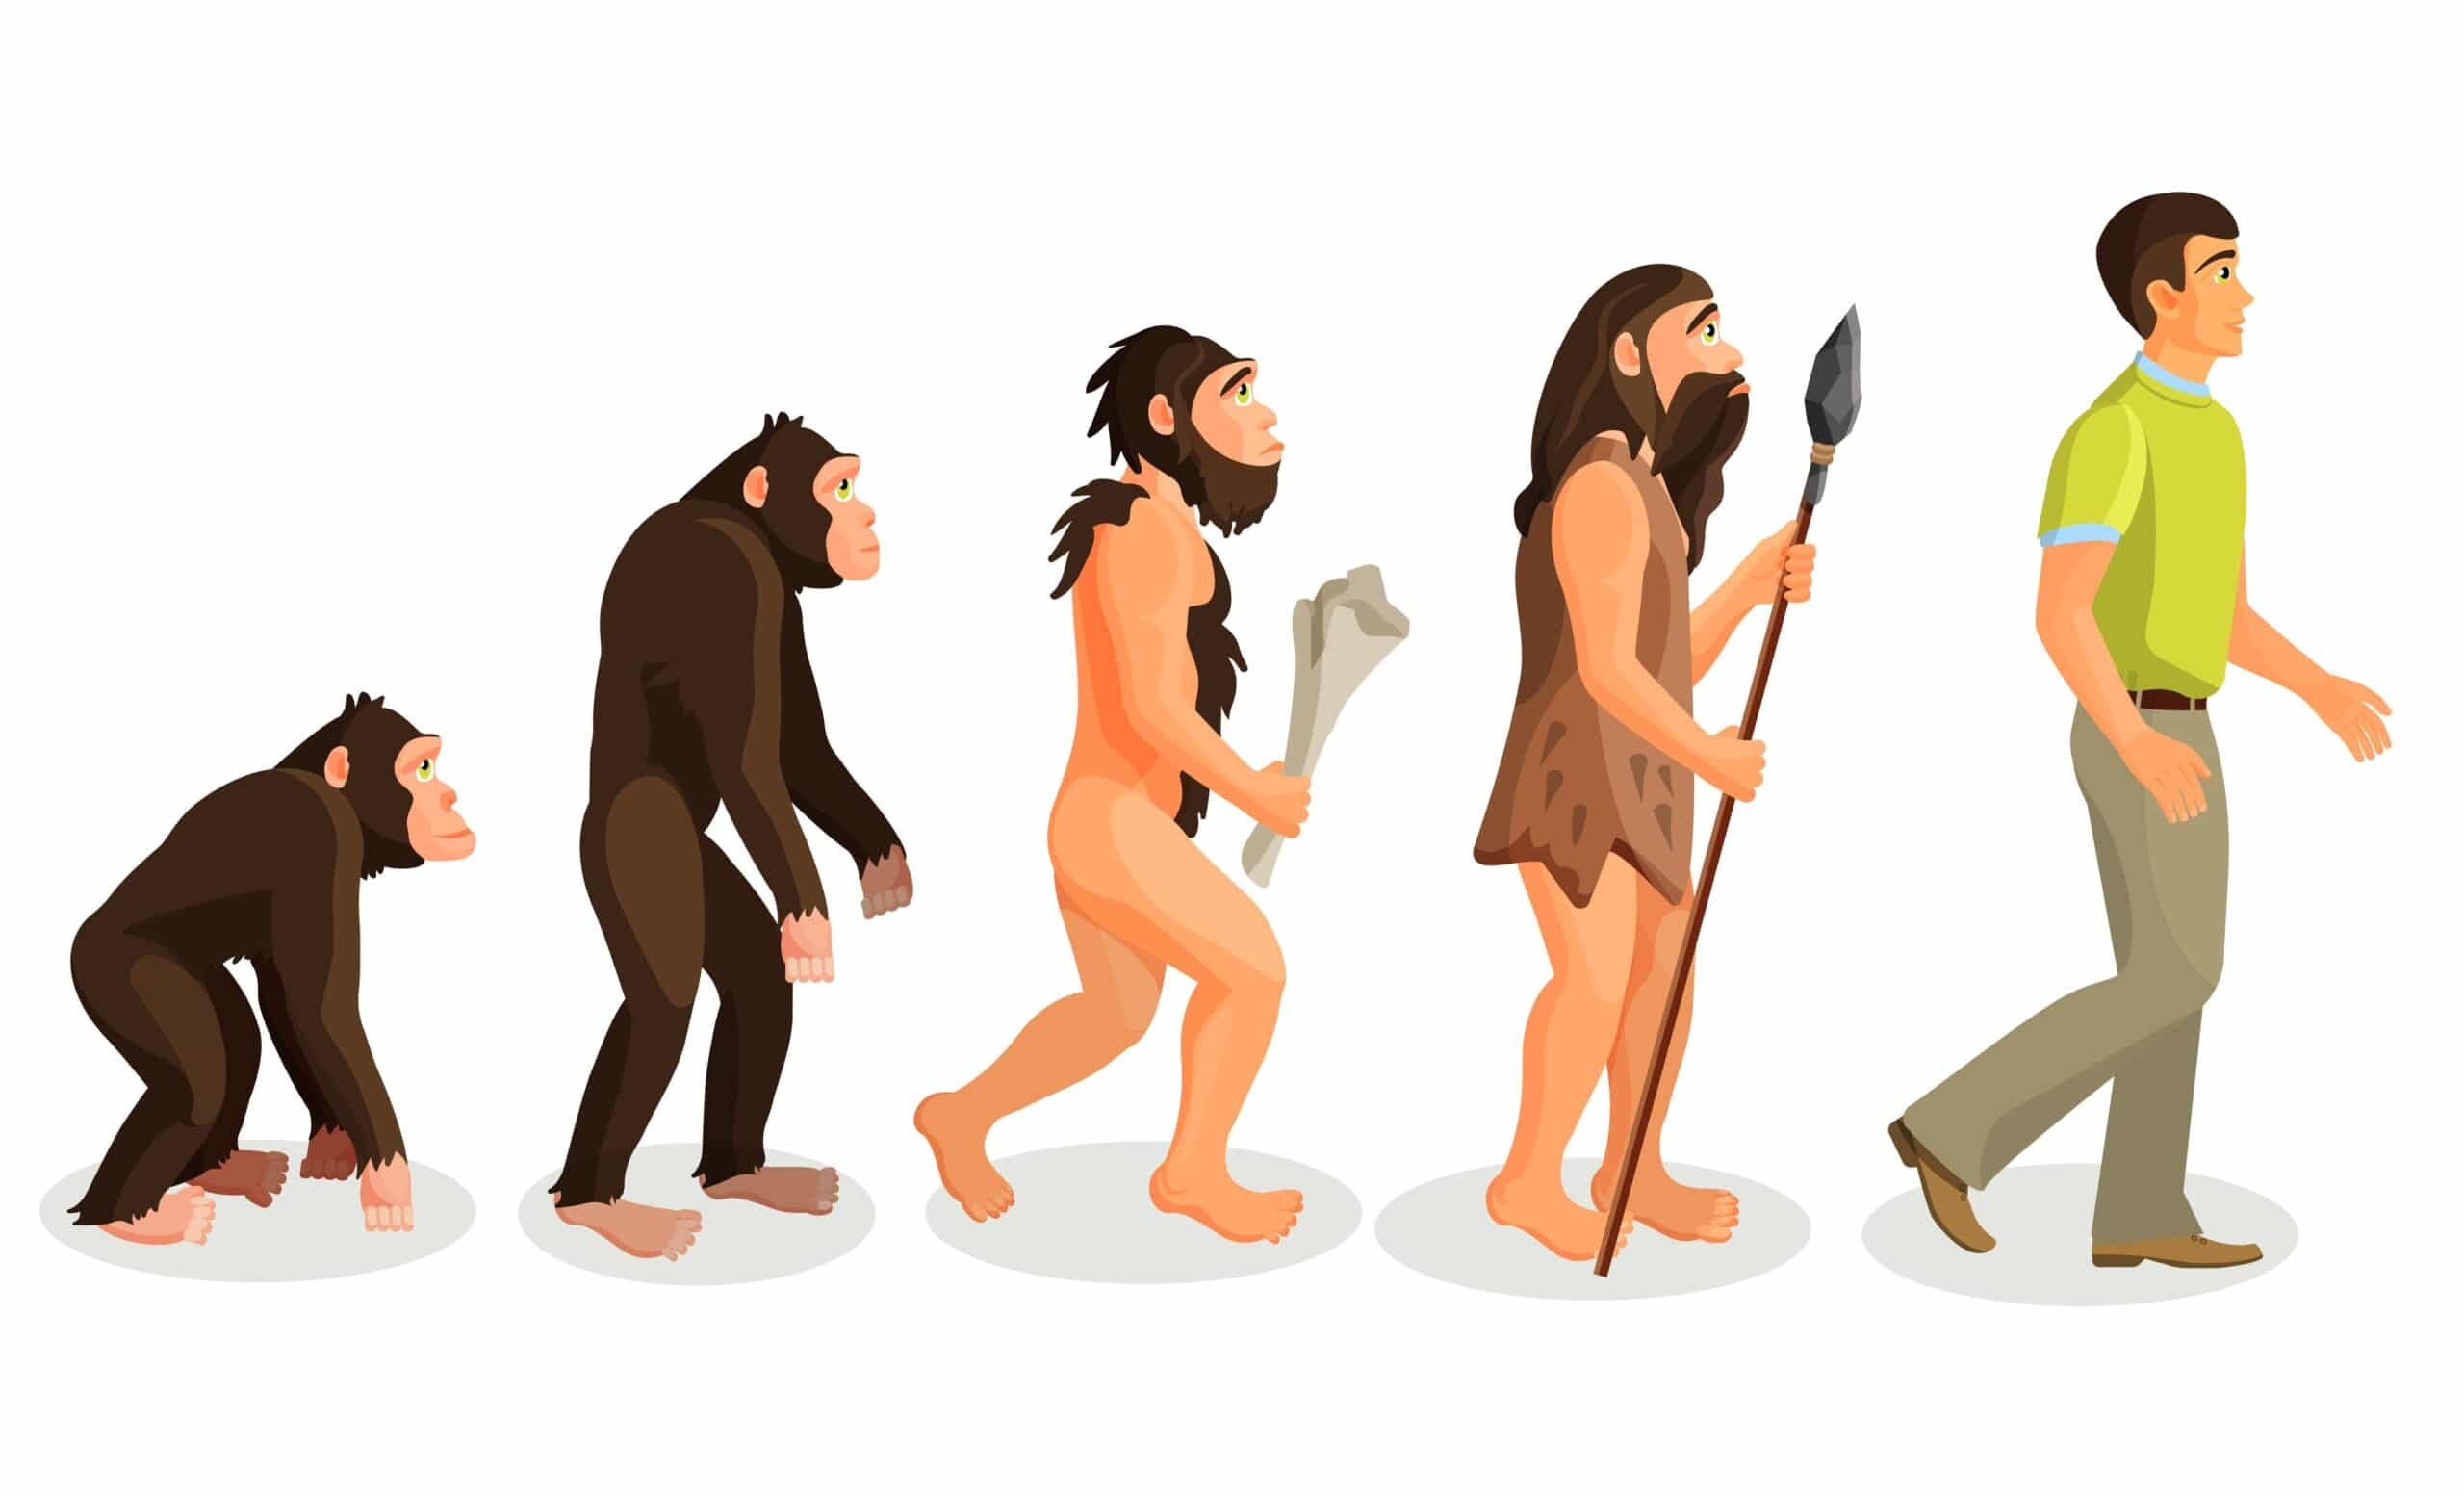 Процесс превращения человека в обезьяну. Превращение в обезьяну. Человек превращается в обезьяну. Человек эволюционирует в обезьяну. Превращение из обезьяны в человека.